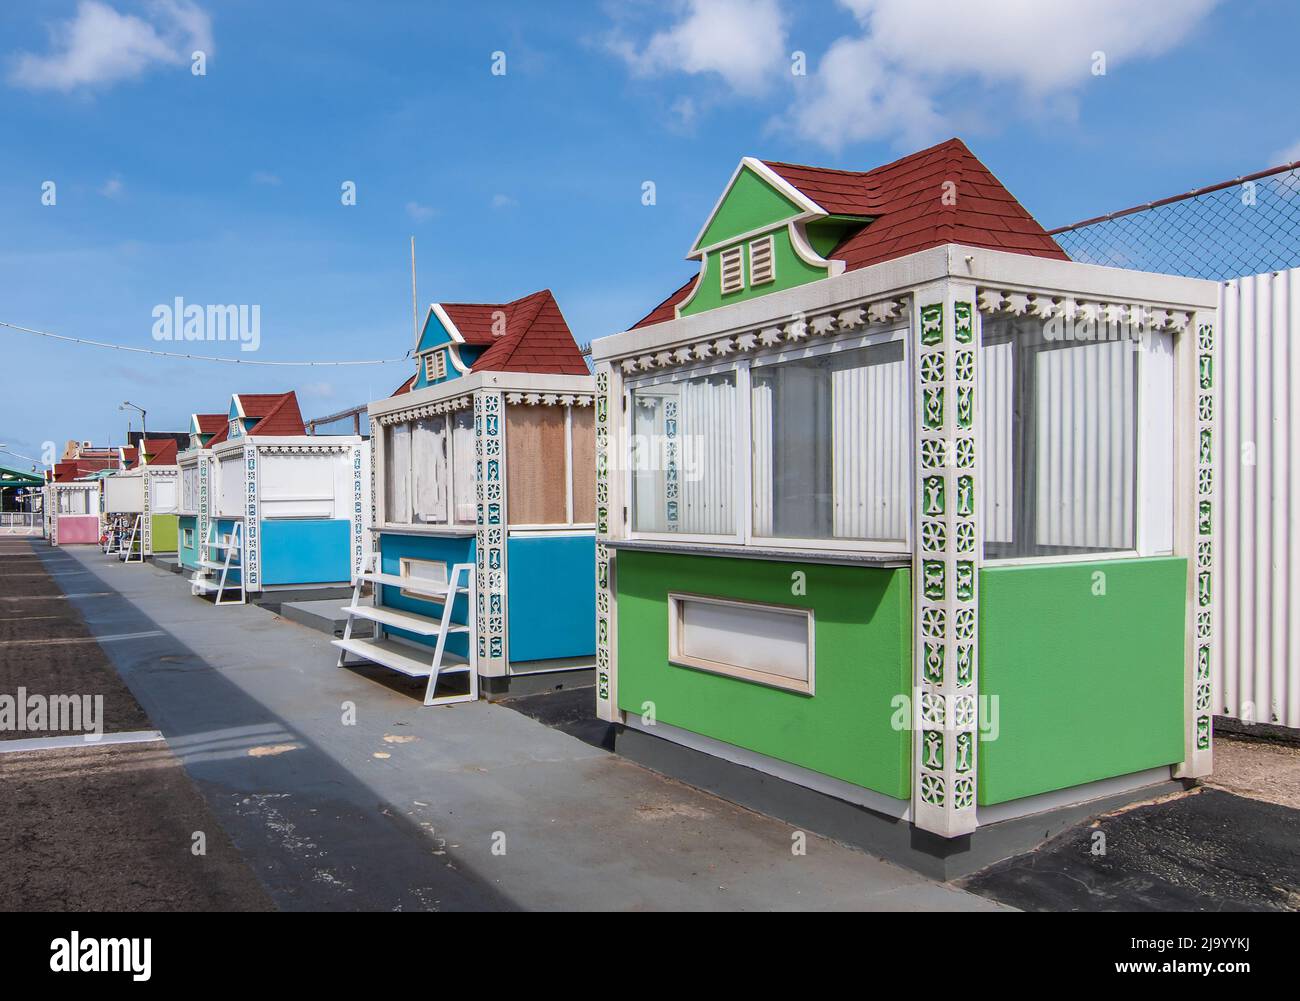 Stands de vendeurs colorés au port de croisière d'Oranjestad, Aruba. Banque D'Images